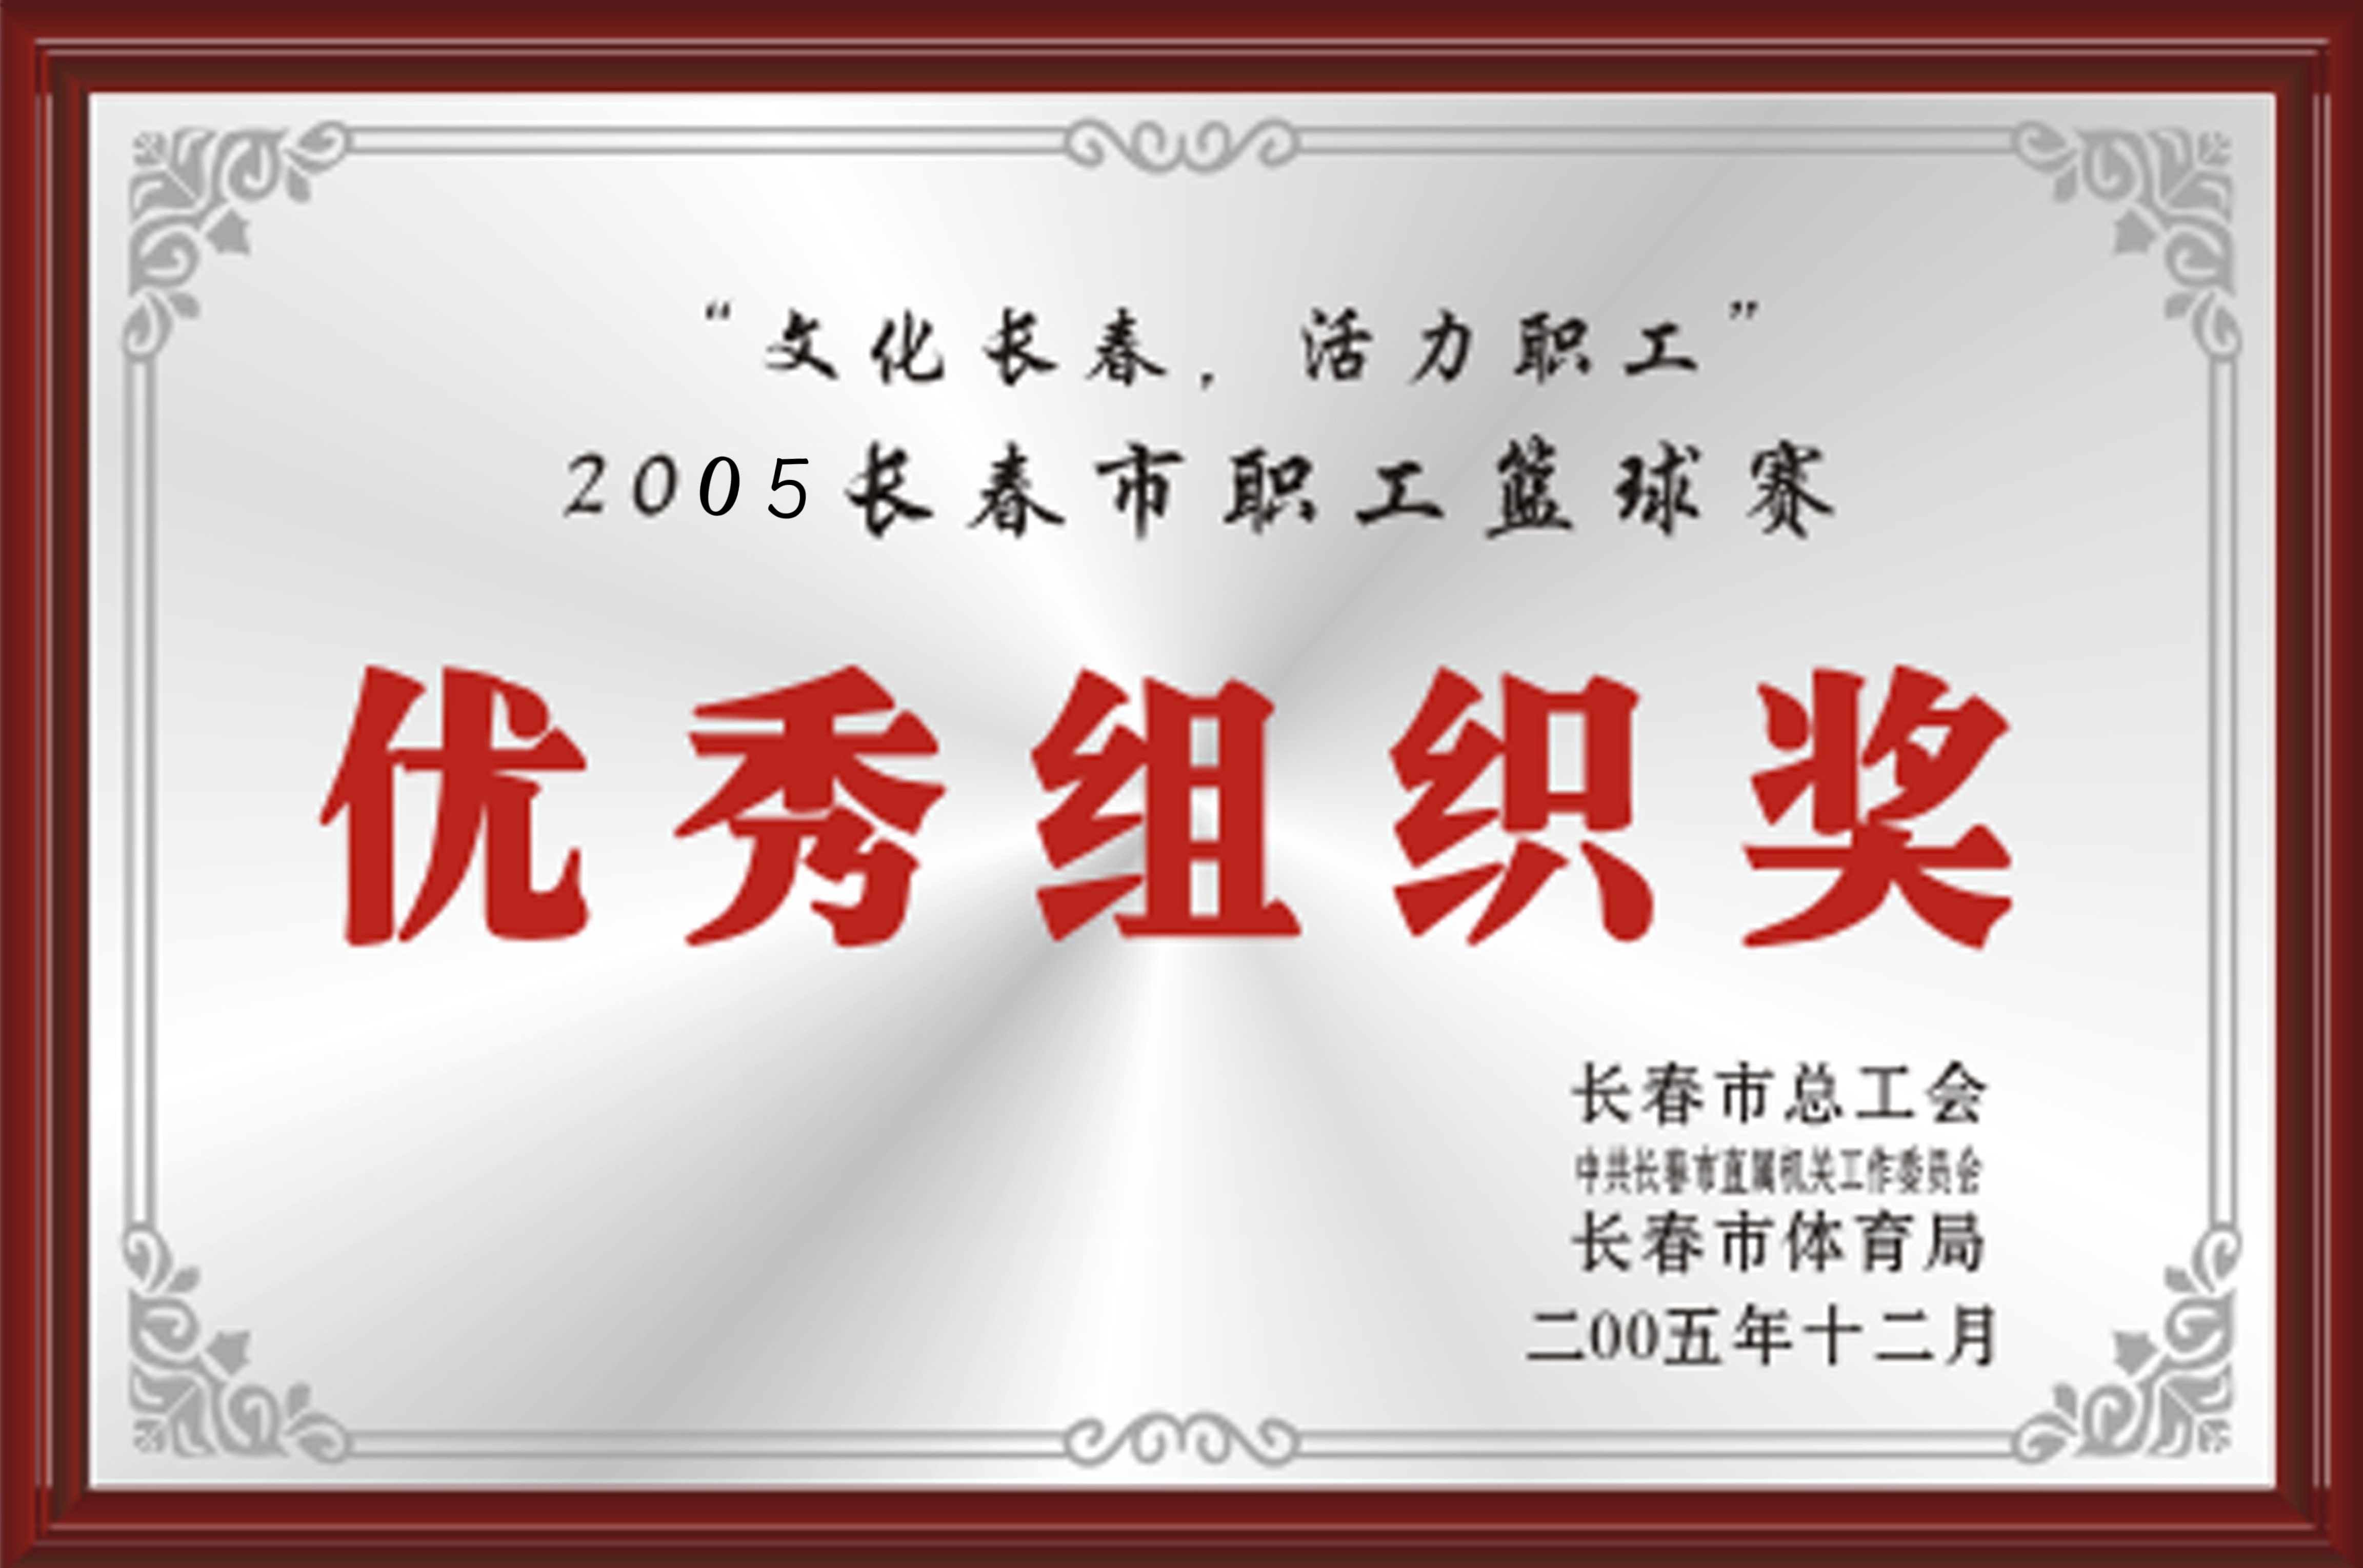 2005年长春市职工篮球赛优秀组织奖